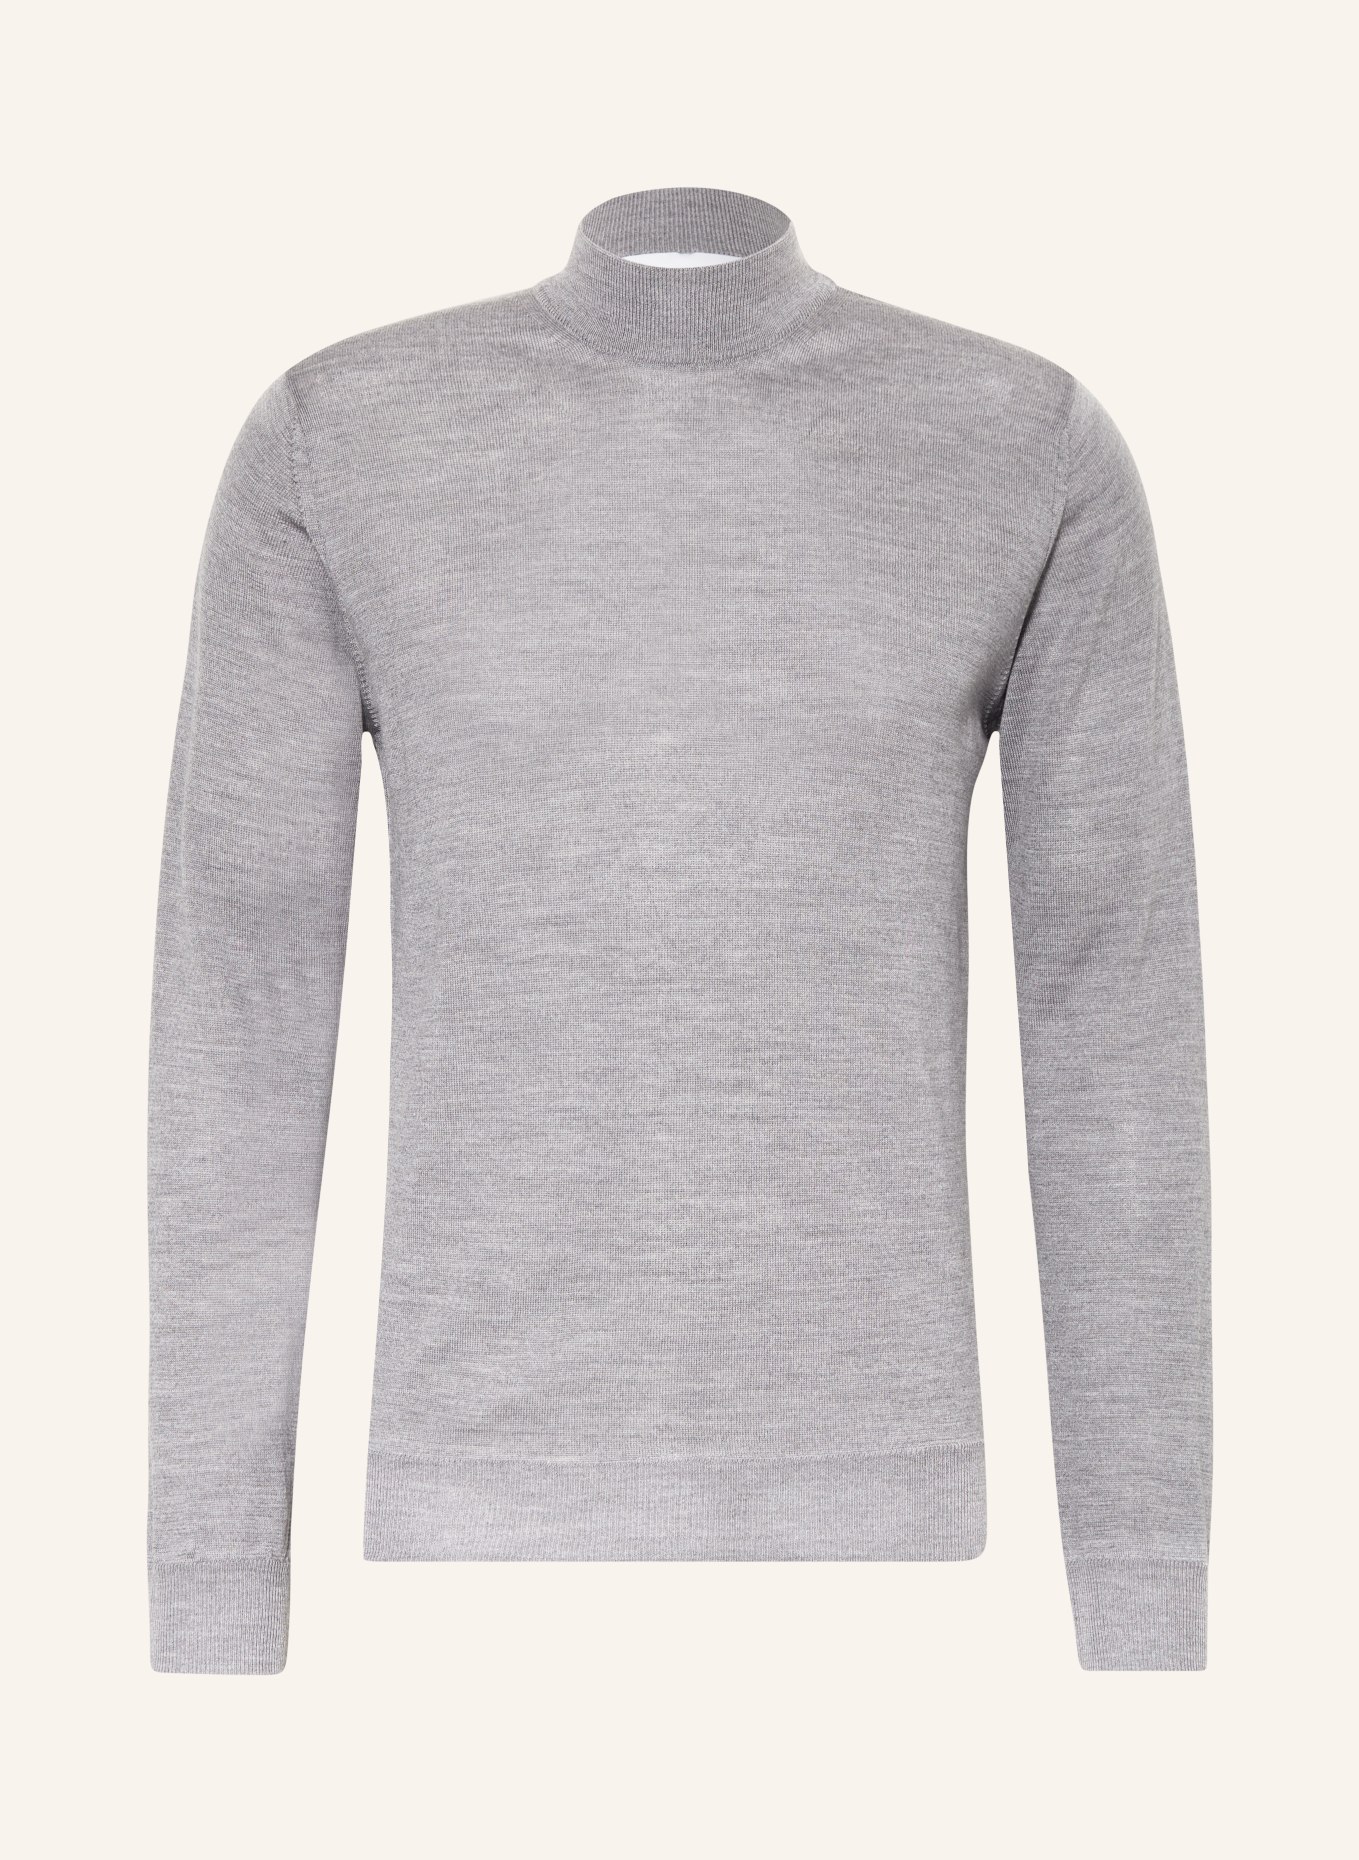 BALDESSARINI Sweater, Color: GRAY (Image 1)